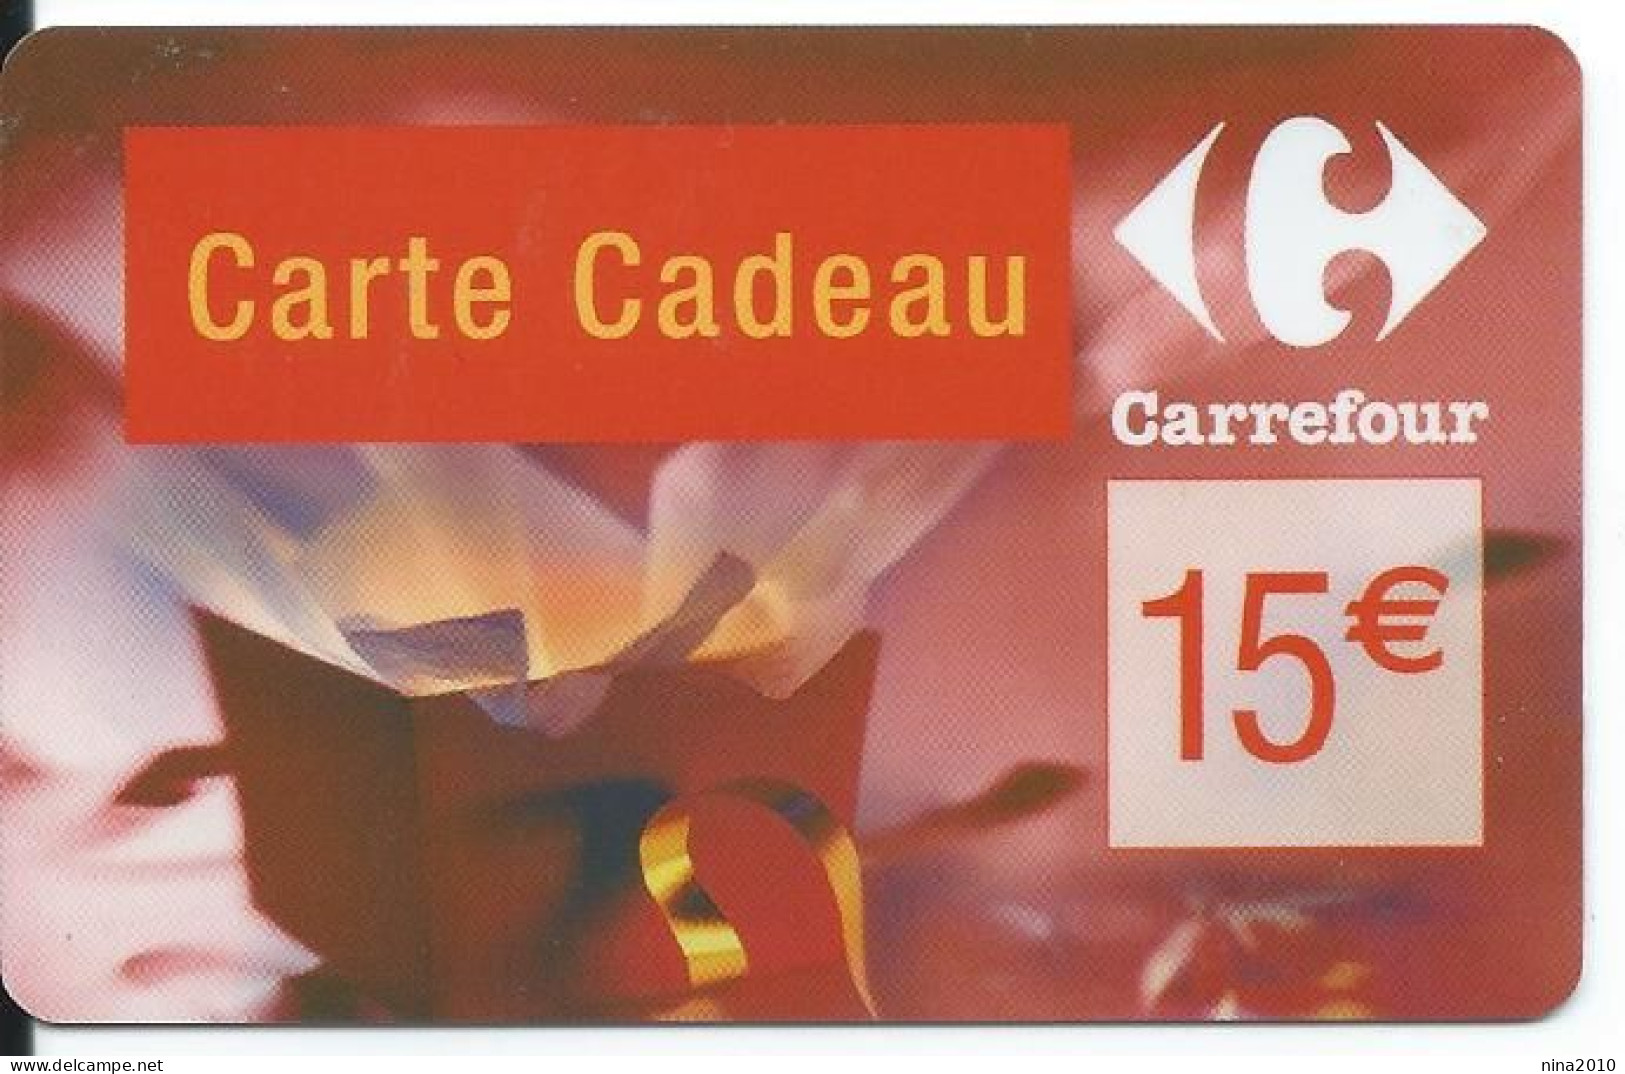 Carte Cadeau - Carrefour Verso 31/12/2007  - VOIR DESCRIPTION Avant Enchères -  GIFT CARD /GESCHENKKARTE - Cartes Cadeaux